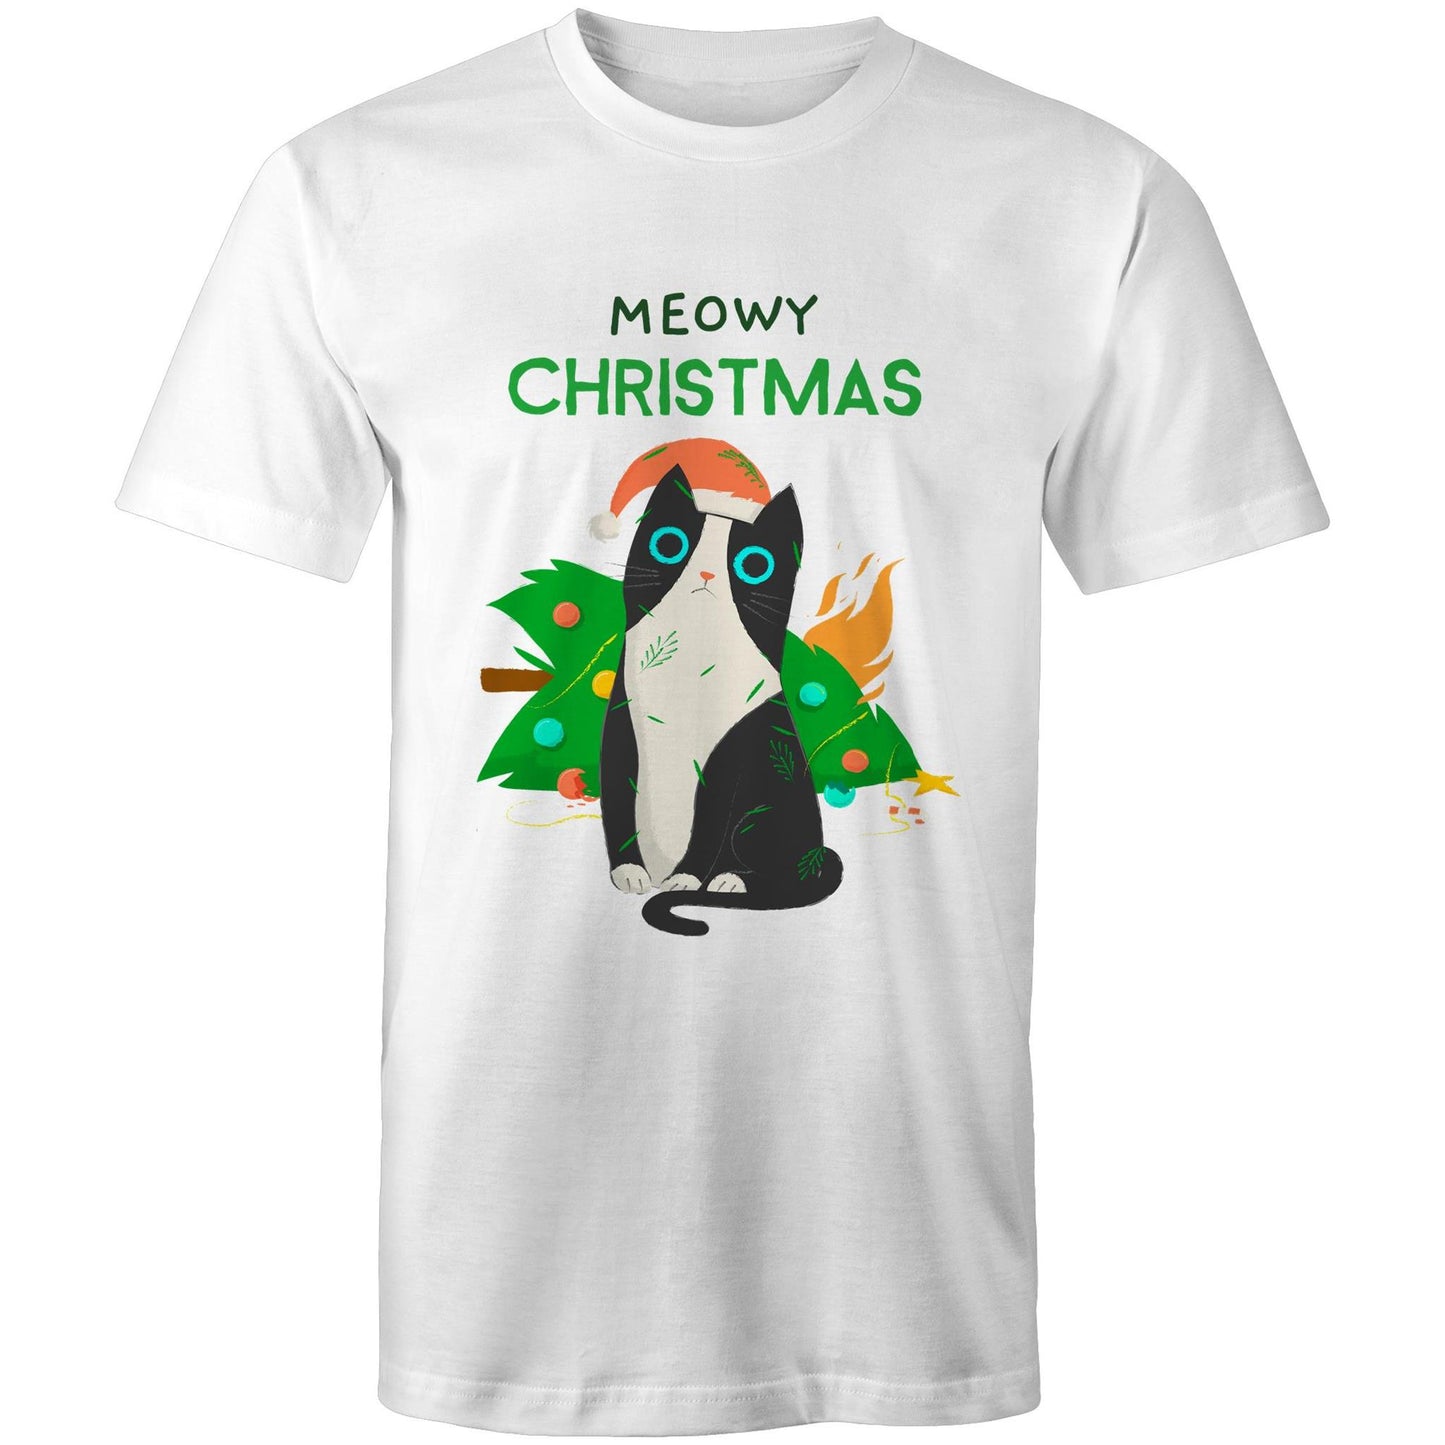 Meowy Christmas - Mens T-Shirt White Christmas Mens T-shirt Merry Christmas